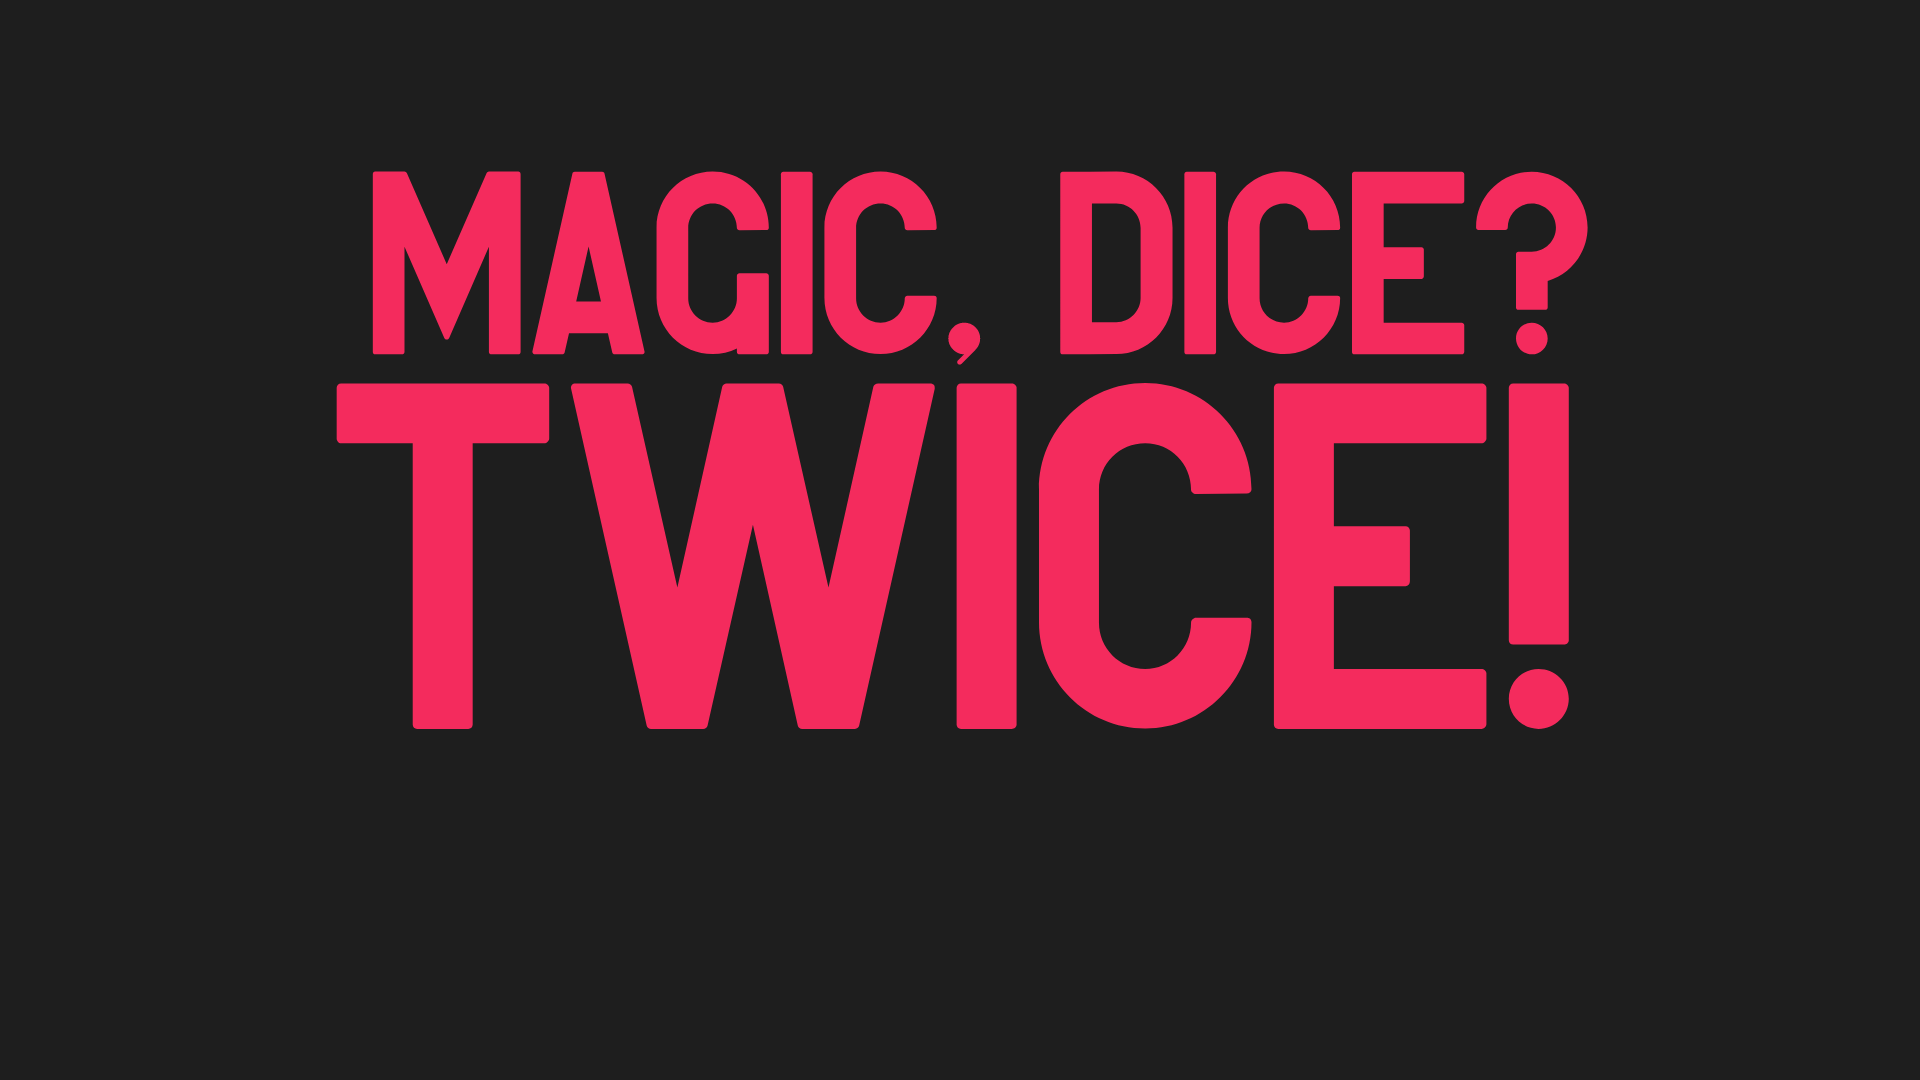 Magic, Dice? Twice!